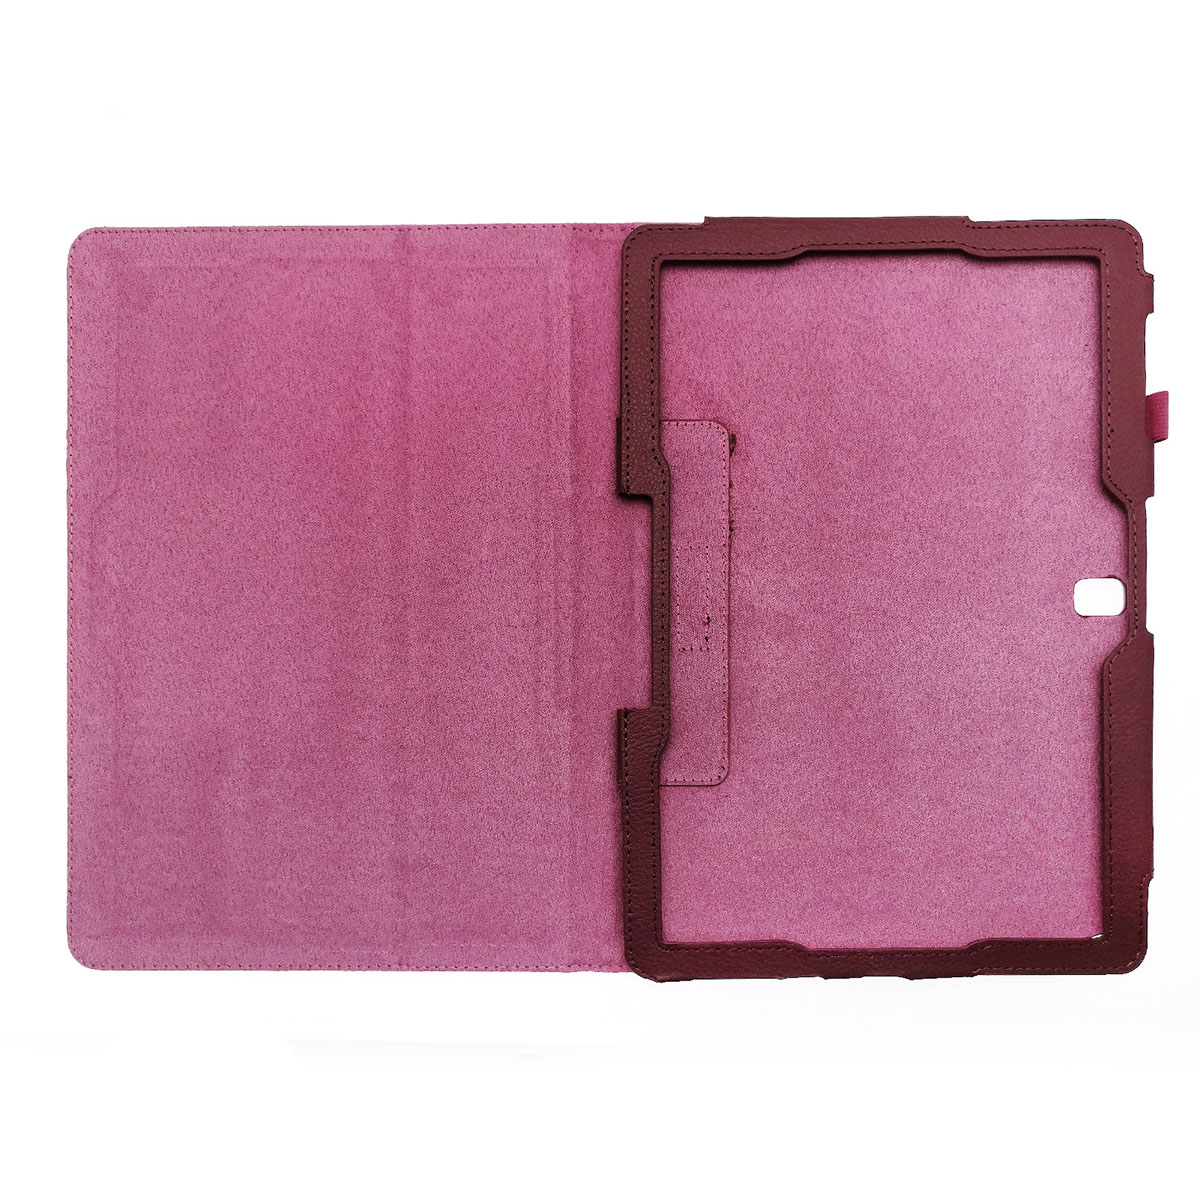 Чехол книжка для SAMSUNG Galaxy Note Pro 12.2 (SM-P900), экокожа, цвет малиновый.